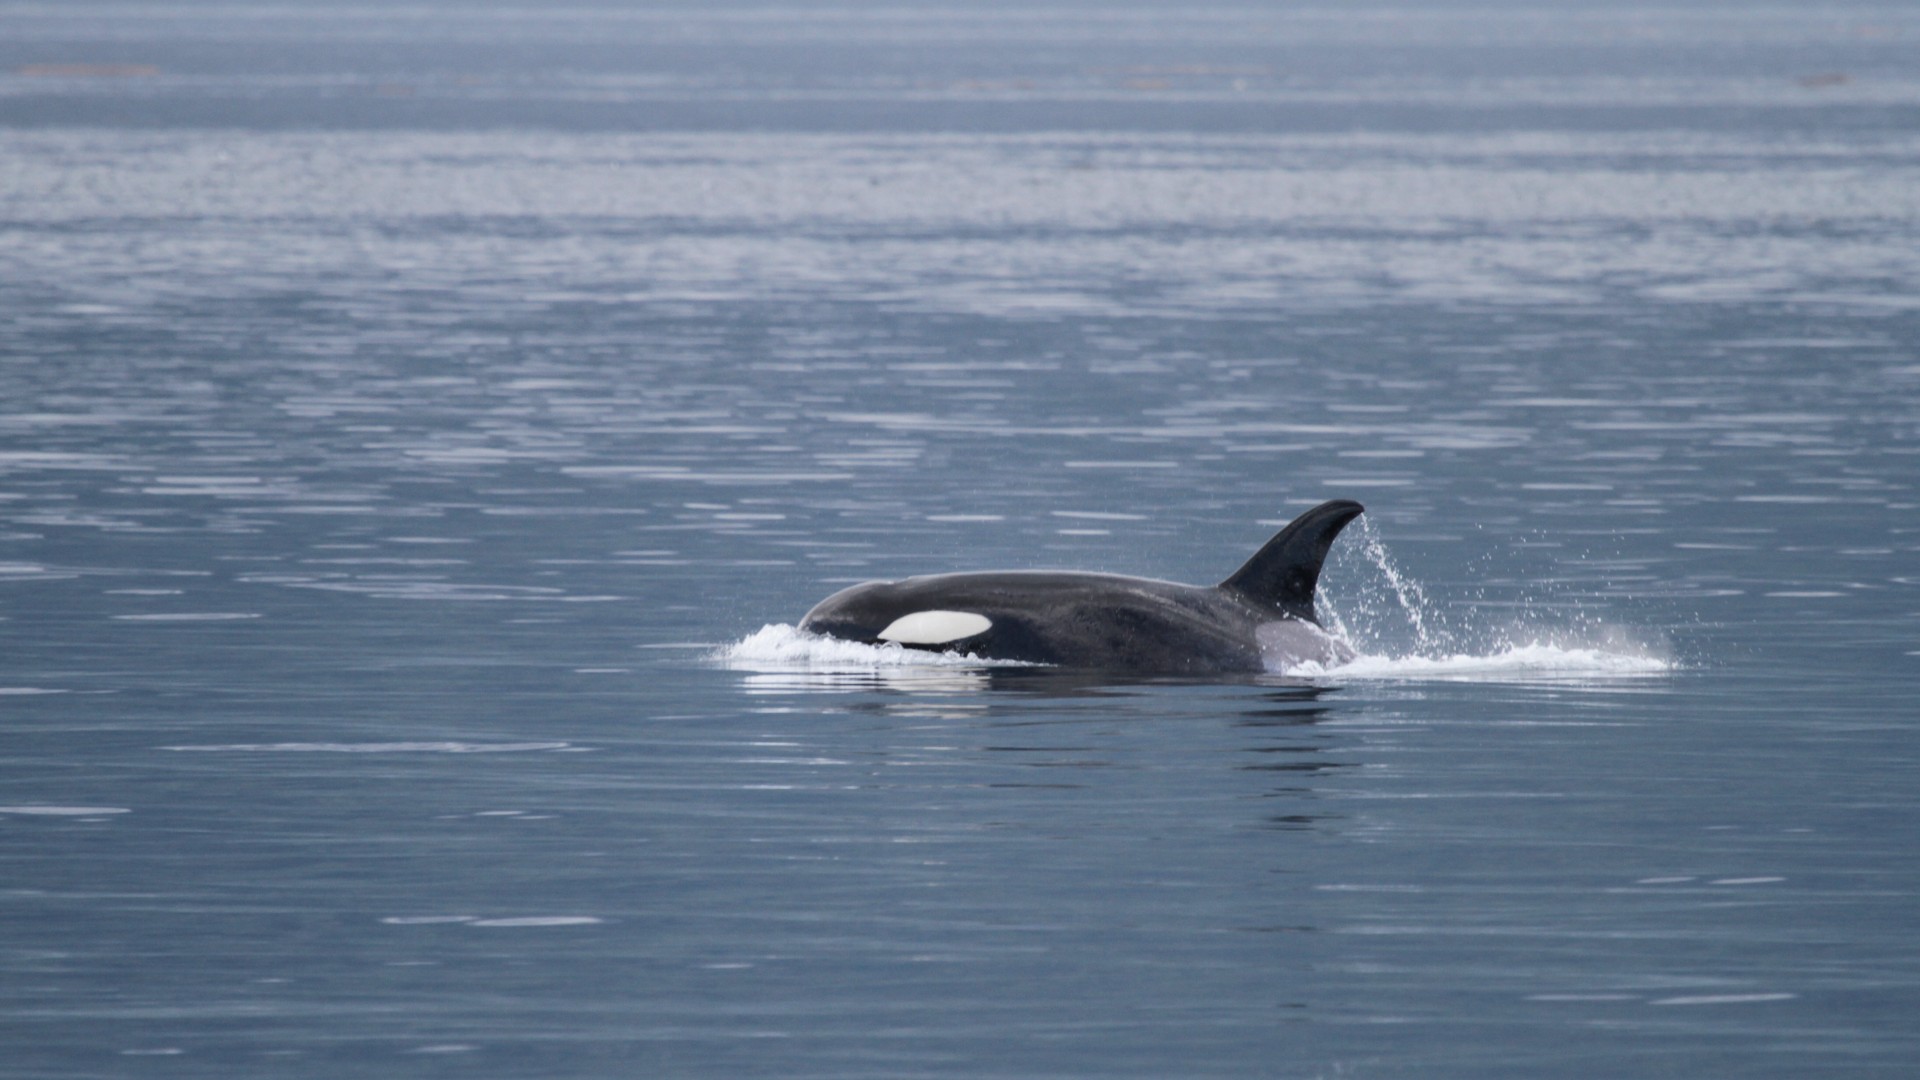 A wild orca swimming in the sea